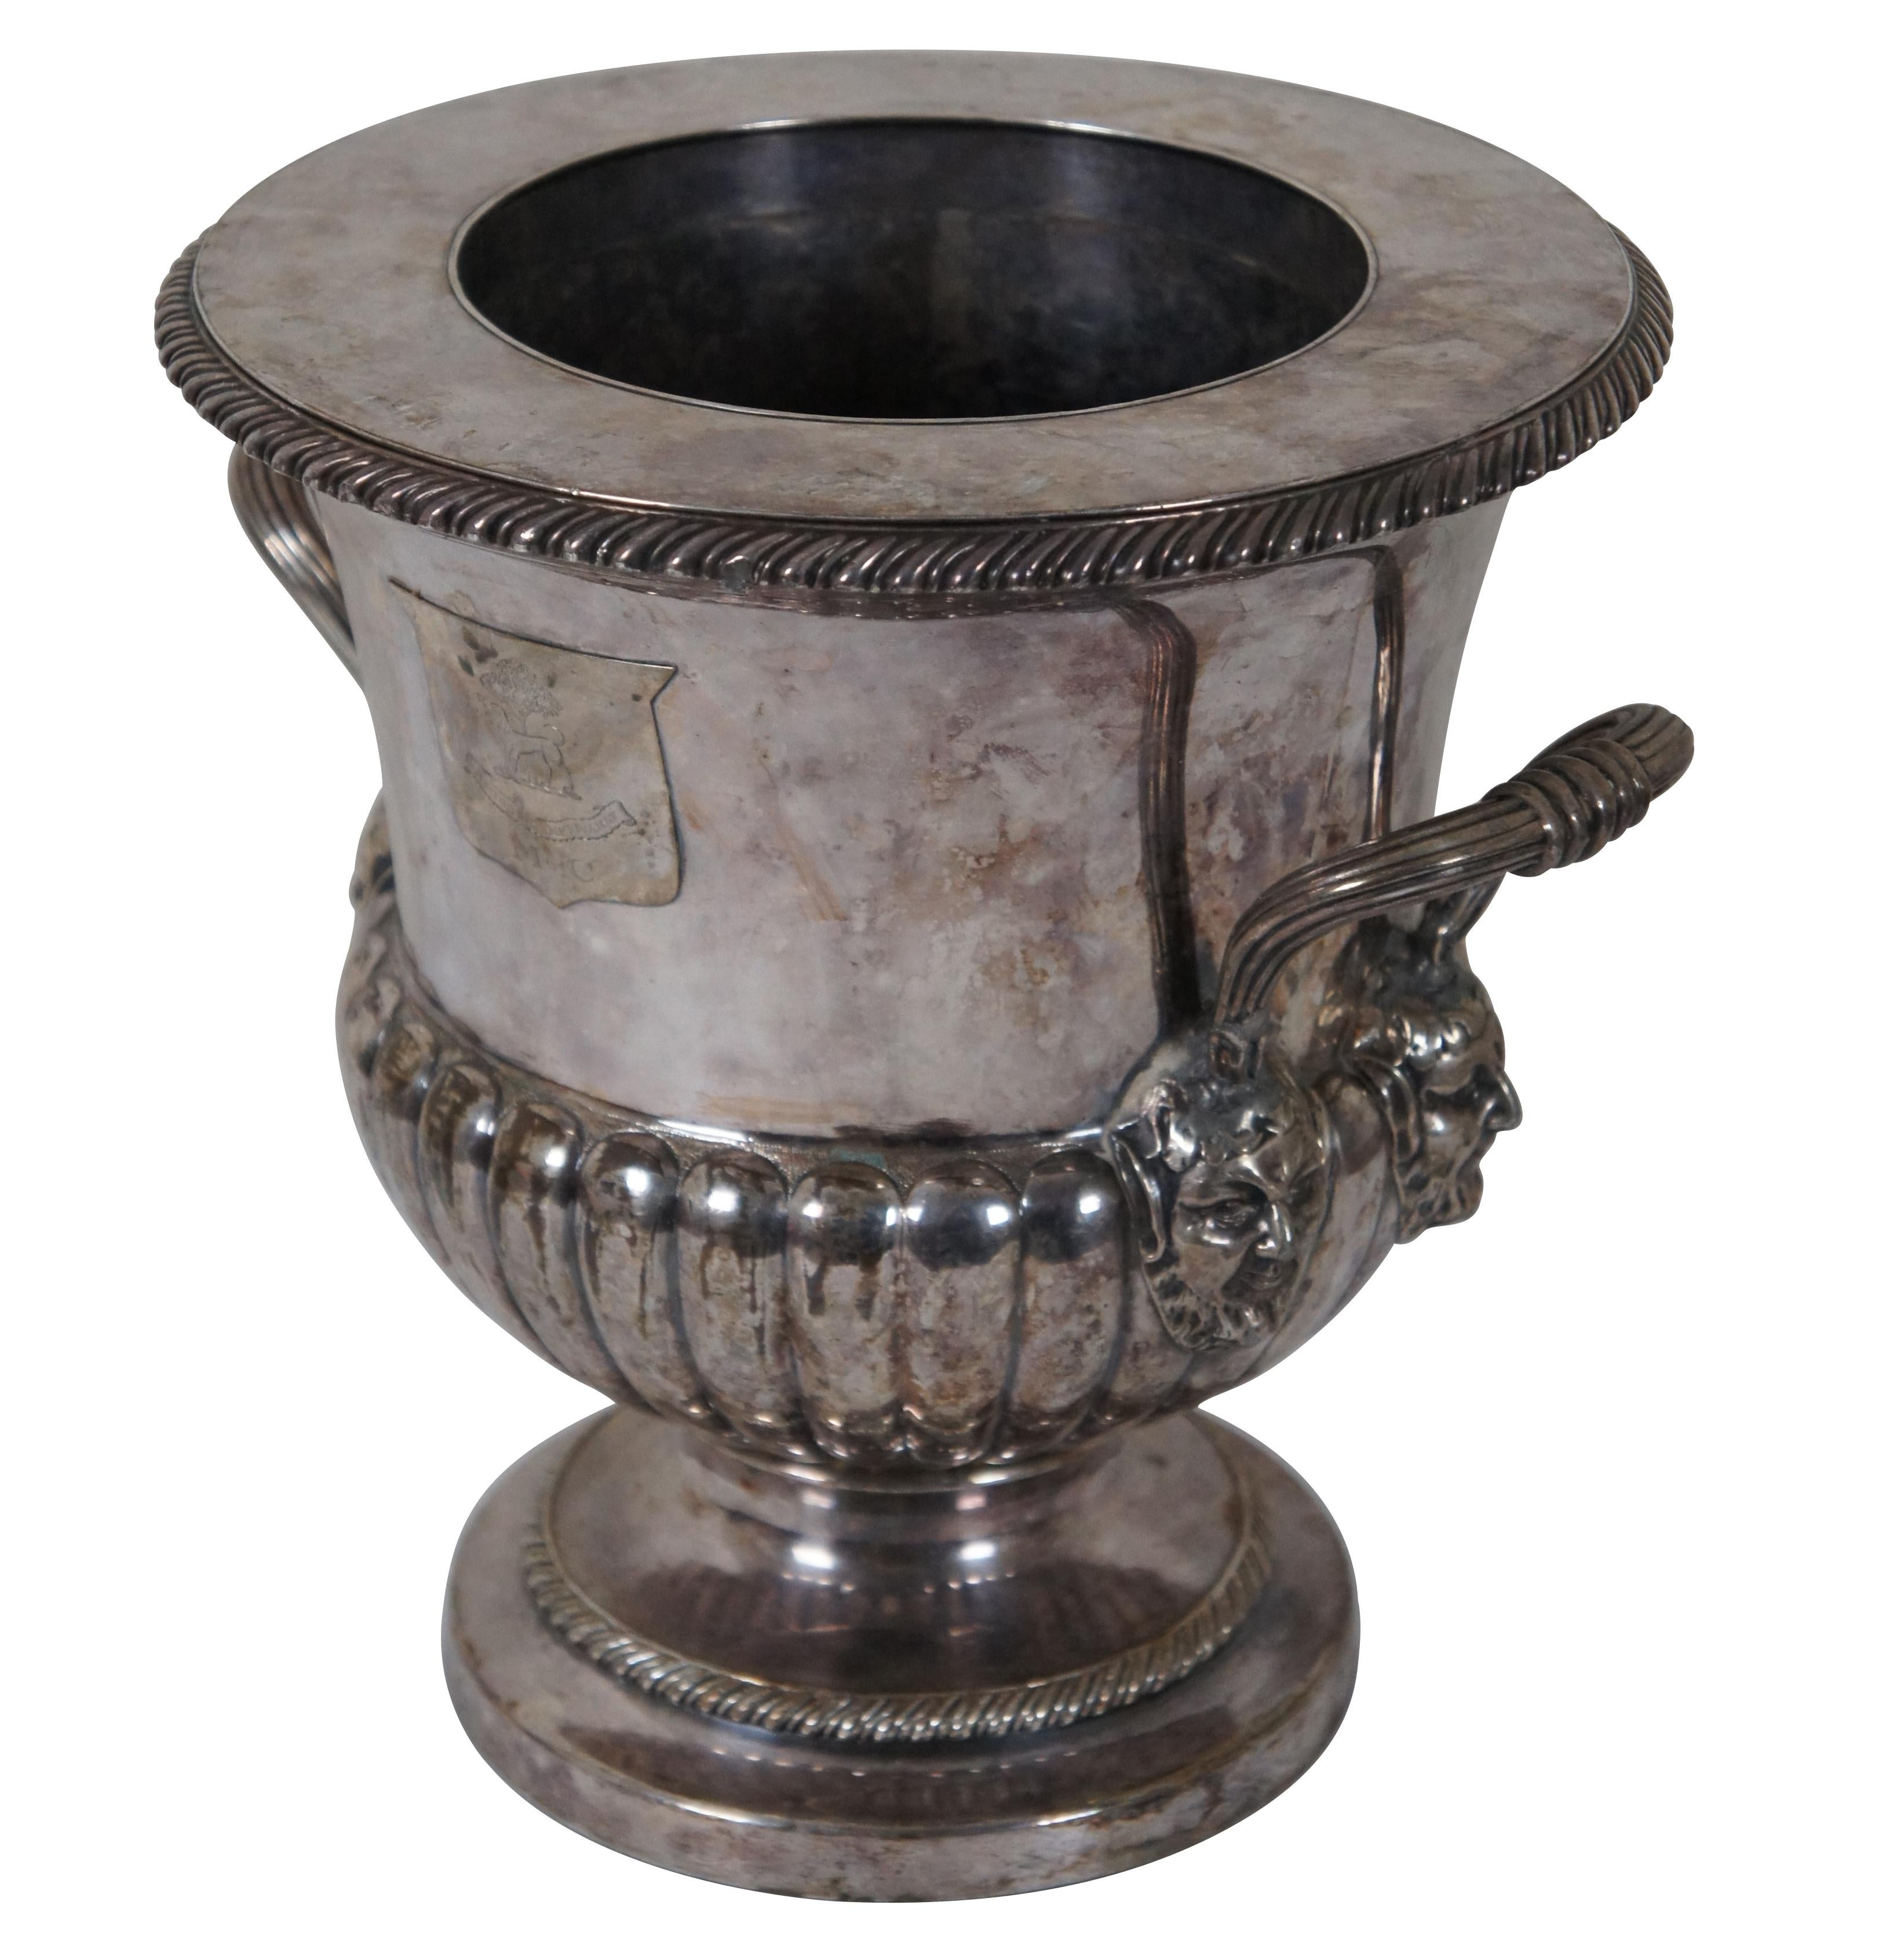 Rafraîchisseur de champagne ou de vin en métal argenté ancien. La forme classique d'une urne trophée est agrémentée de godrons ciselés. Les deux côtés sont ornés de bustes de Dionysos ou de Bacchus, le dieu des vendanges et de la vinification. Le